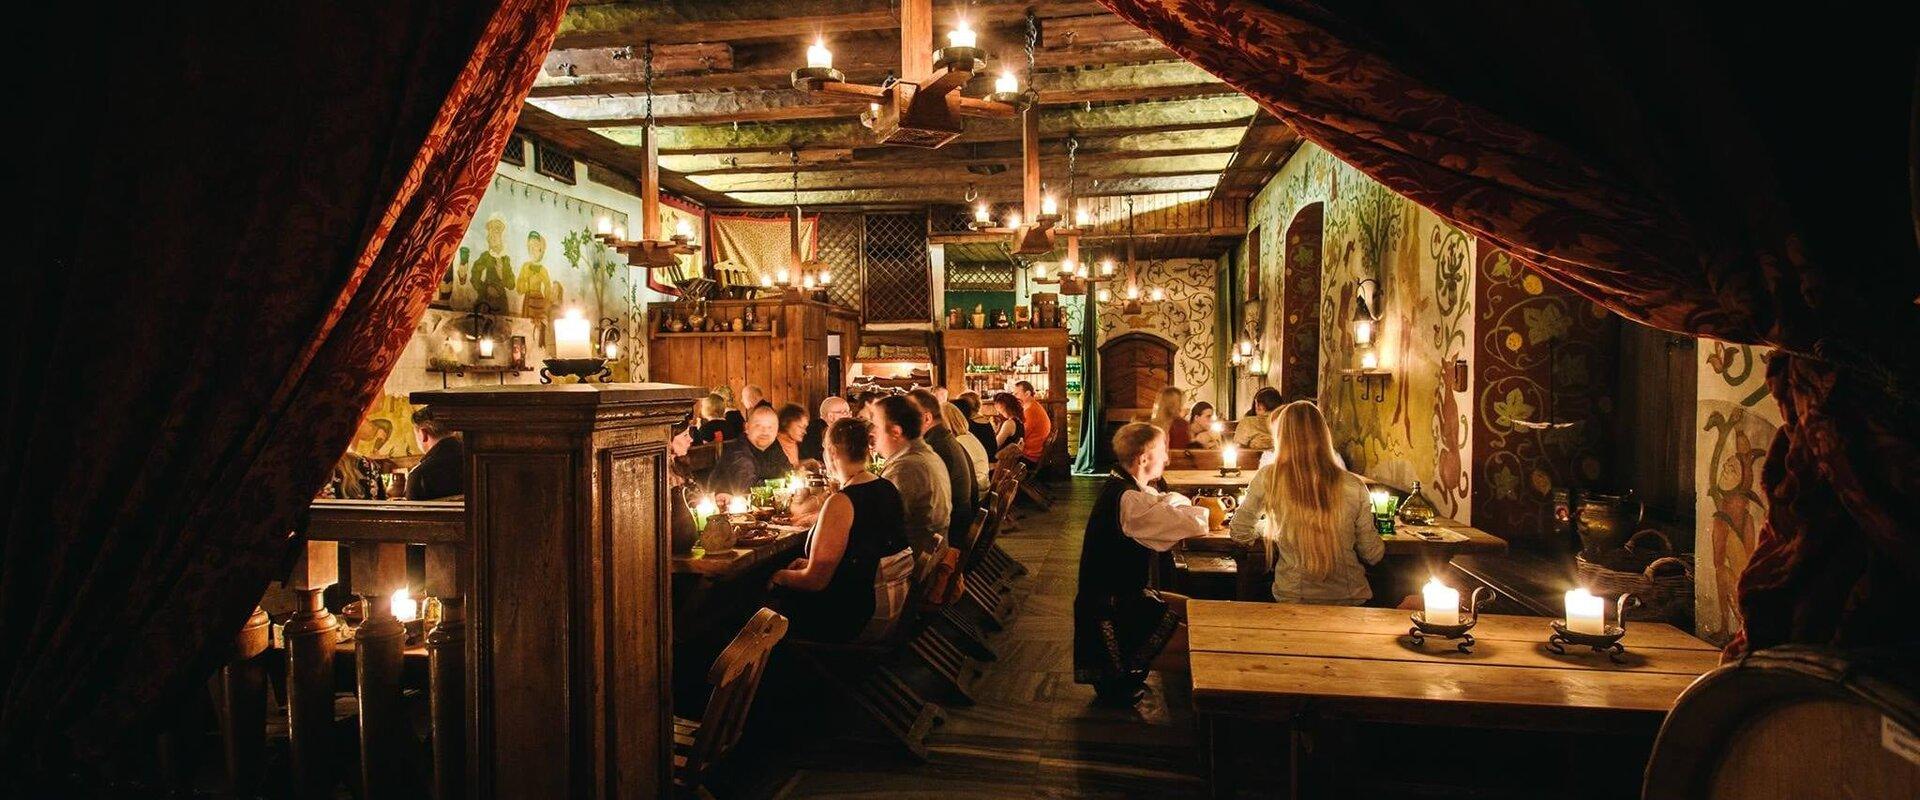 Keskaegne restoran Olde Hansa on rikka kaupmehe kodu, kus külalised saavad nautida hansaaegsete kokkmeistrite kombel valmistatud hõrke roogi ja ürdijo